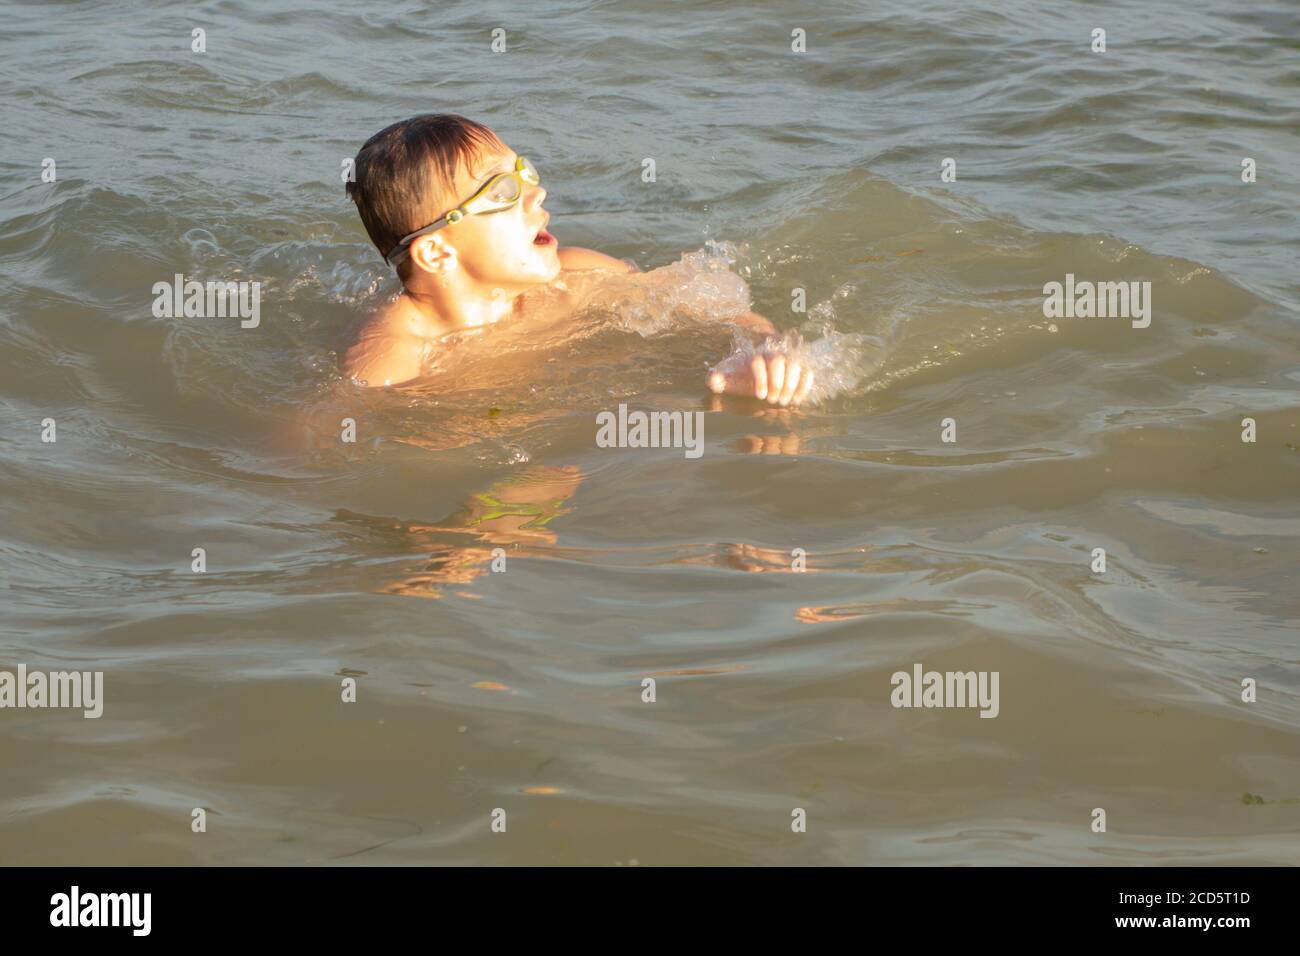 Ragazzo di 10 anni nuota in mare in una giornata di sole. Foto Stock